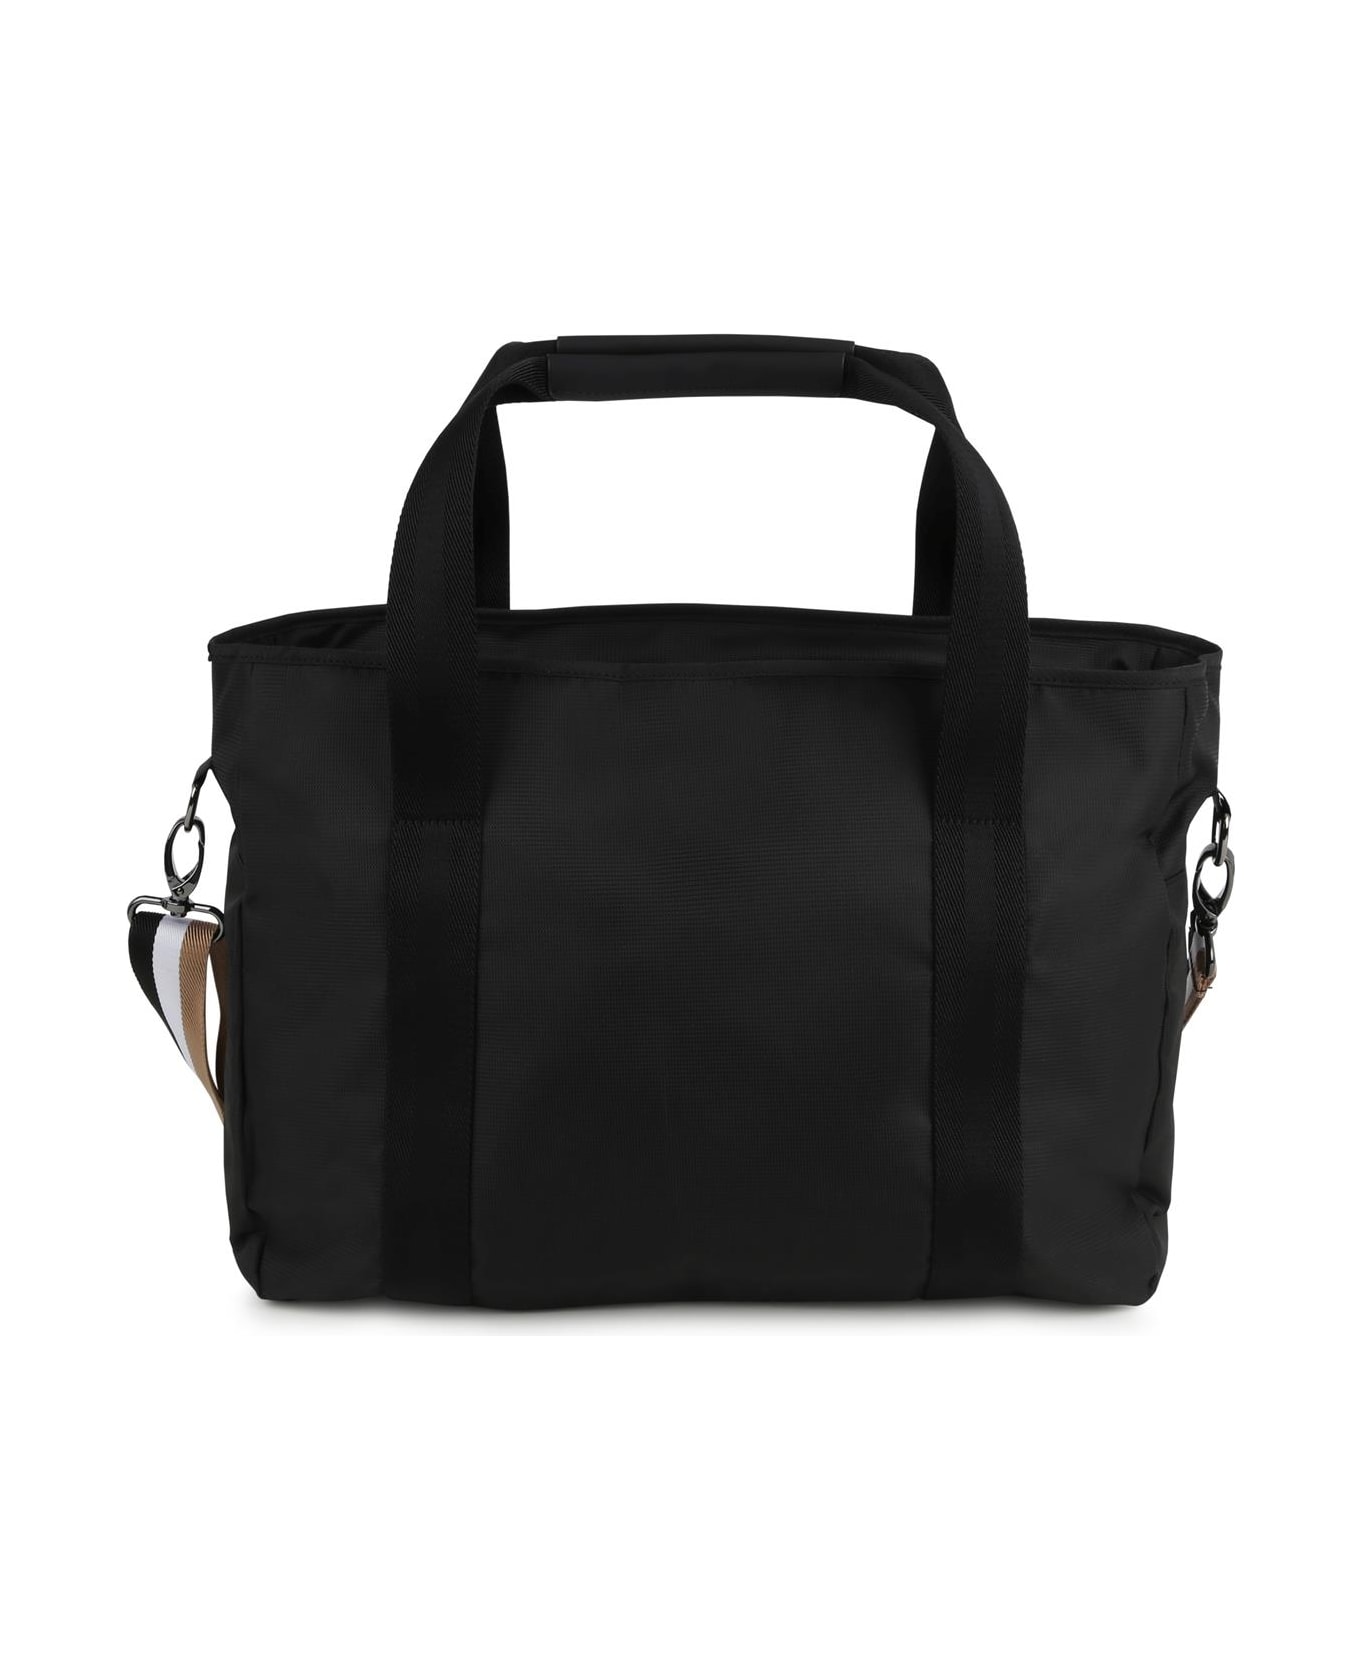 Hugo Boss Changing Bag With Print - Black